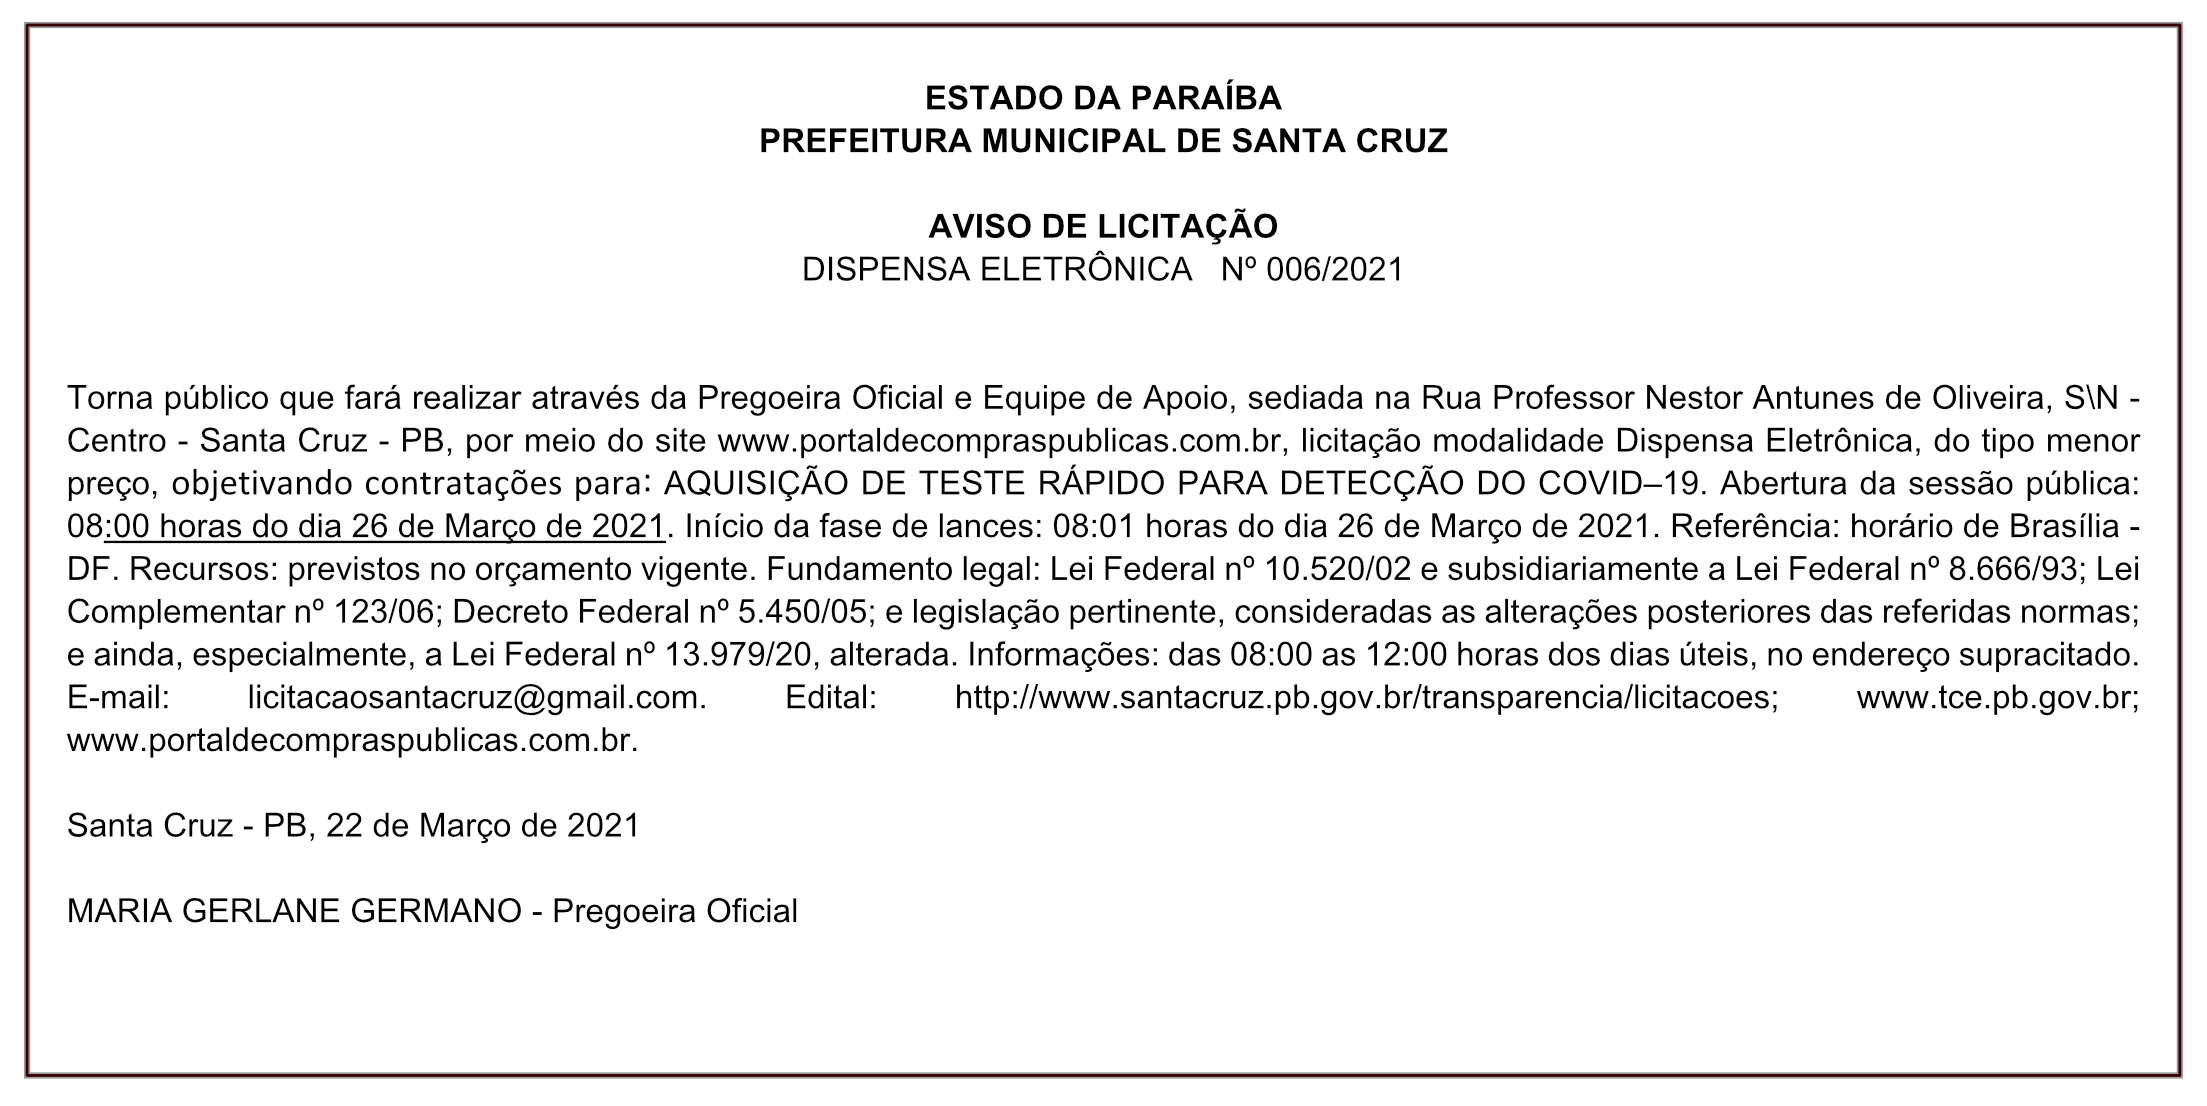 PREFEITURA MUNICIPAL DE SANTA CRUZ – AVISO DE LICITAÇÃO – DISPENSA ELETRÔNICA Nº 006/2021